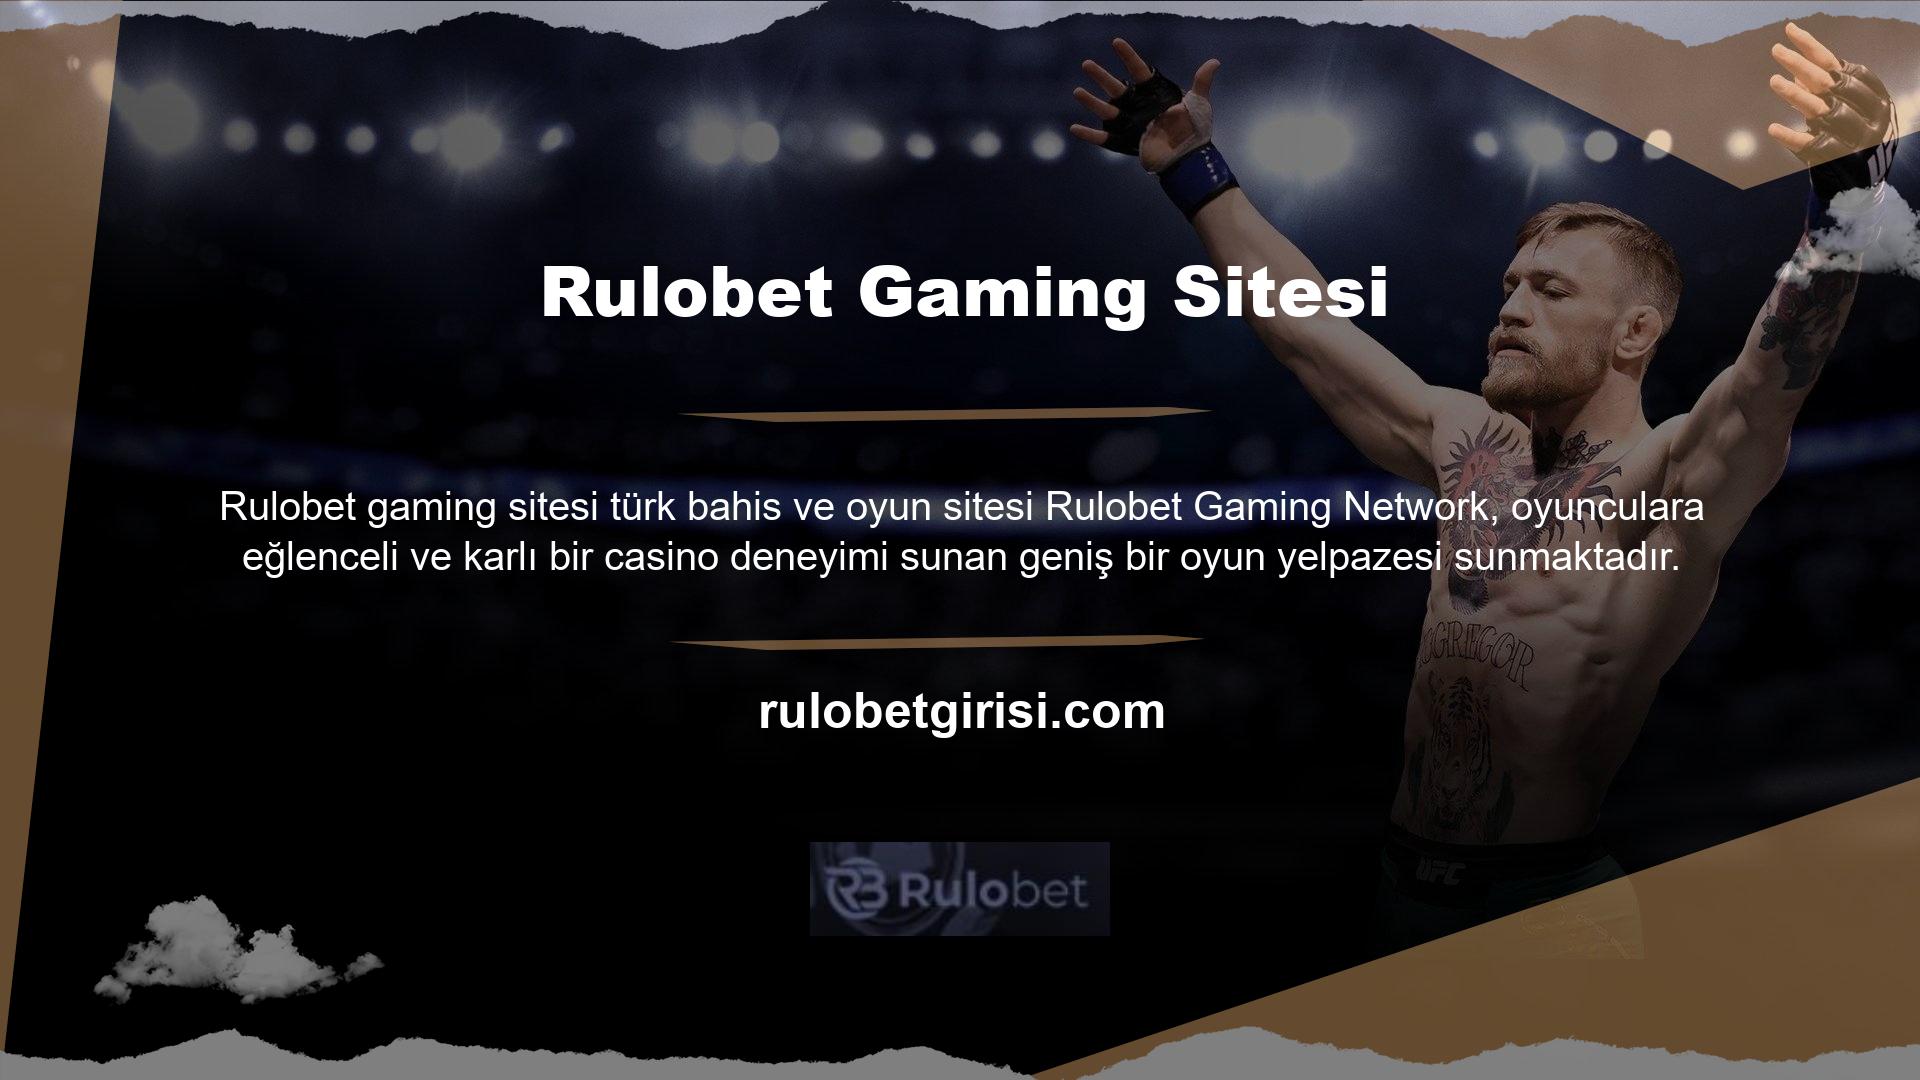 Sunulan tüm oyun seçenekleri ve kaliteli hizmetler Rulobet oyun sitesi para yatırma programı ağı üzerinden sağlanmaktadır